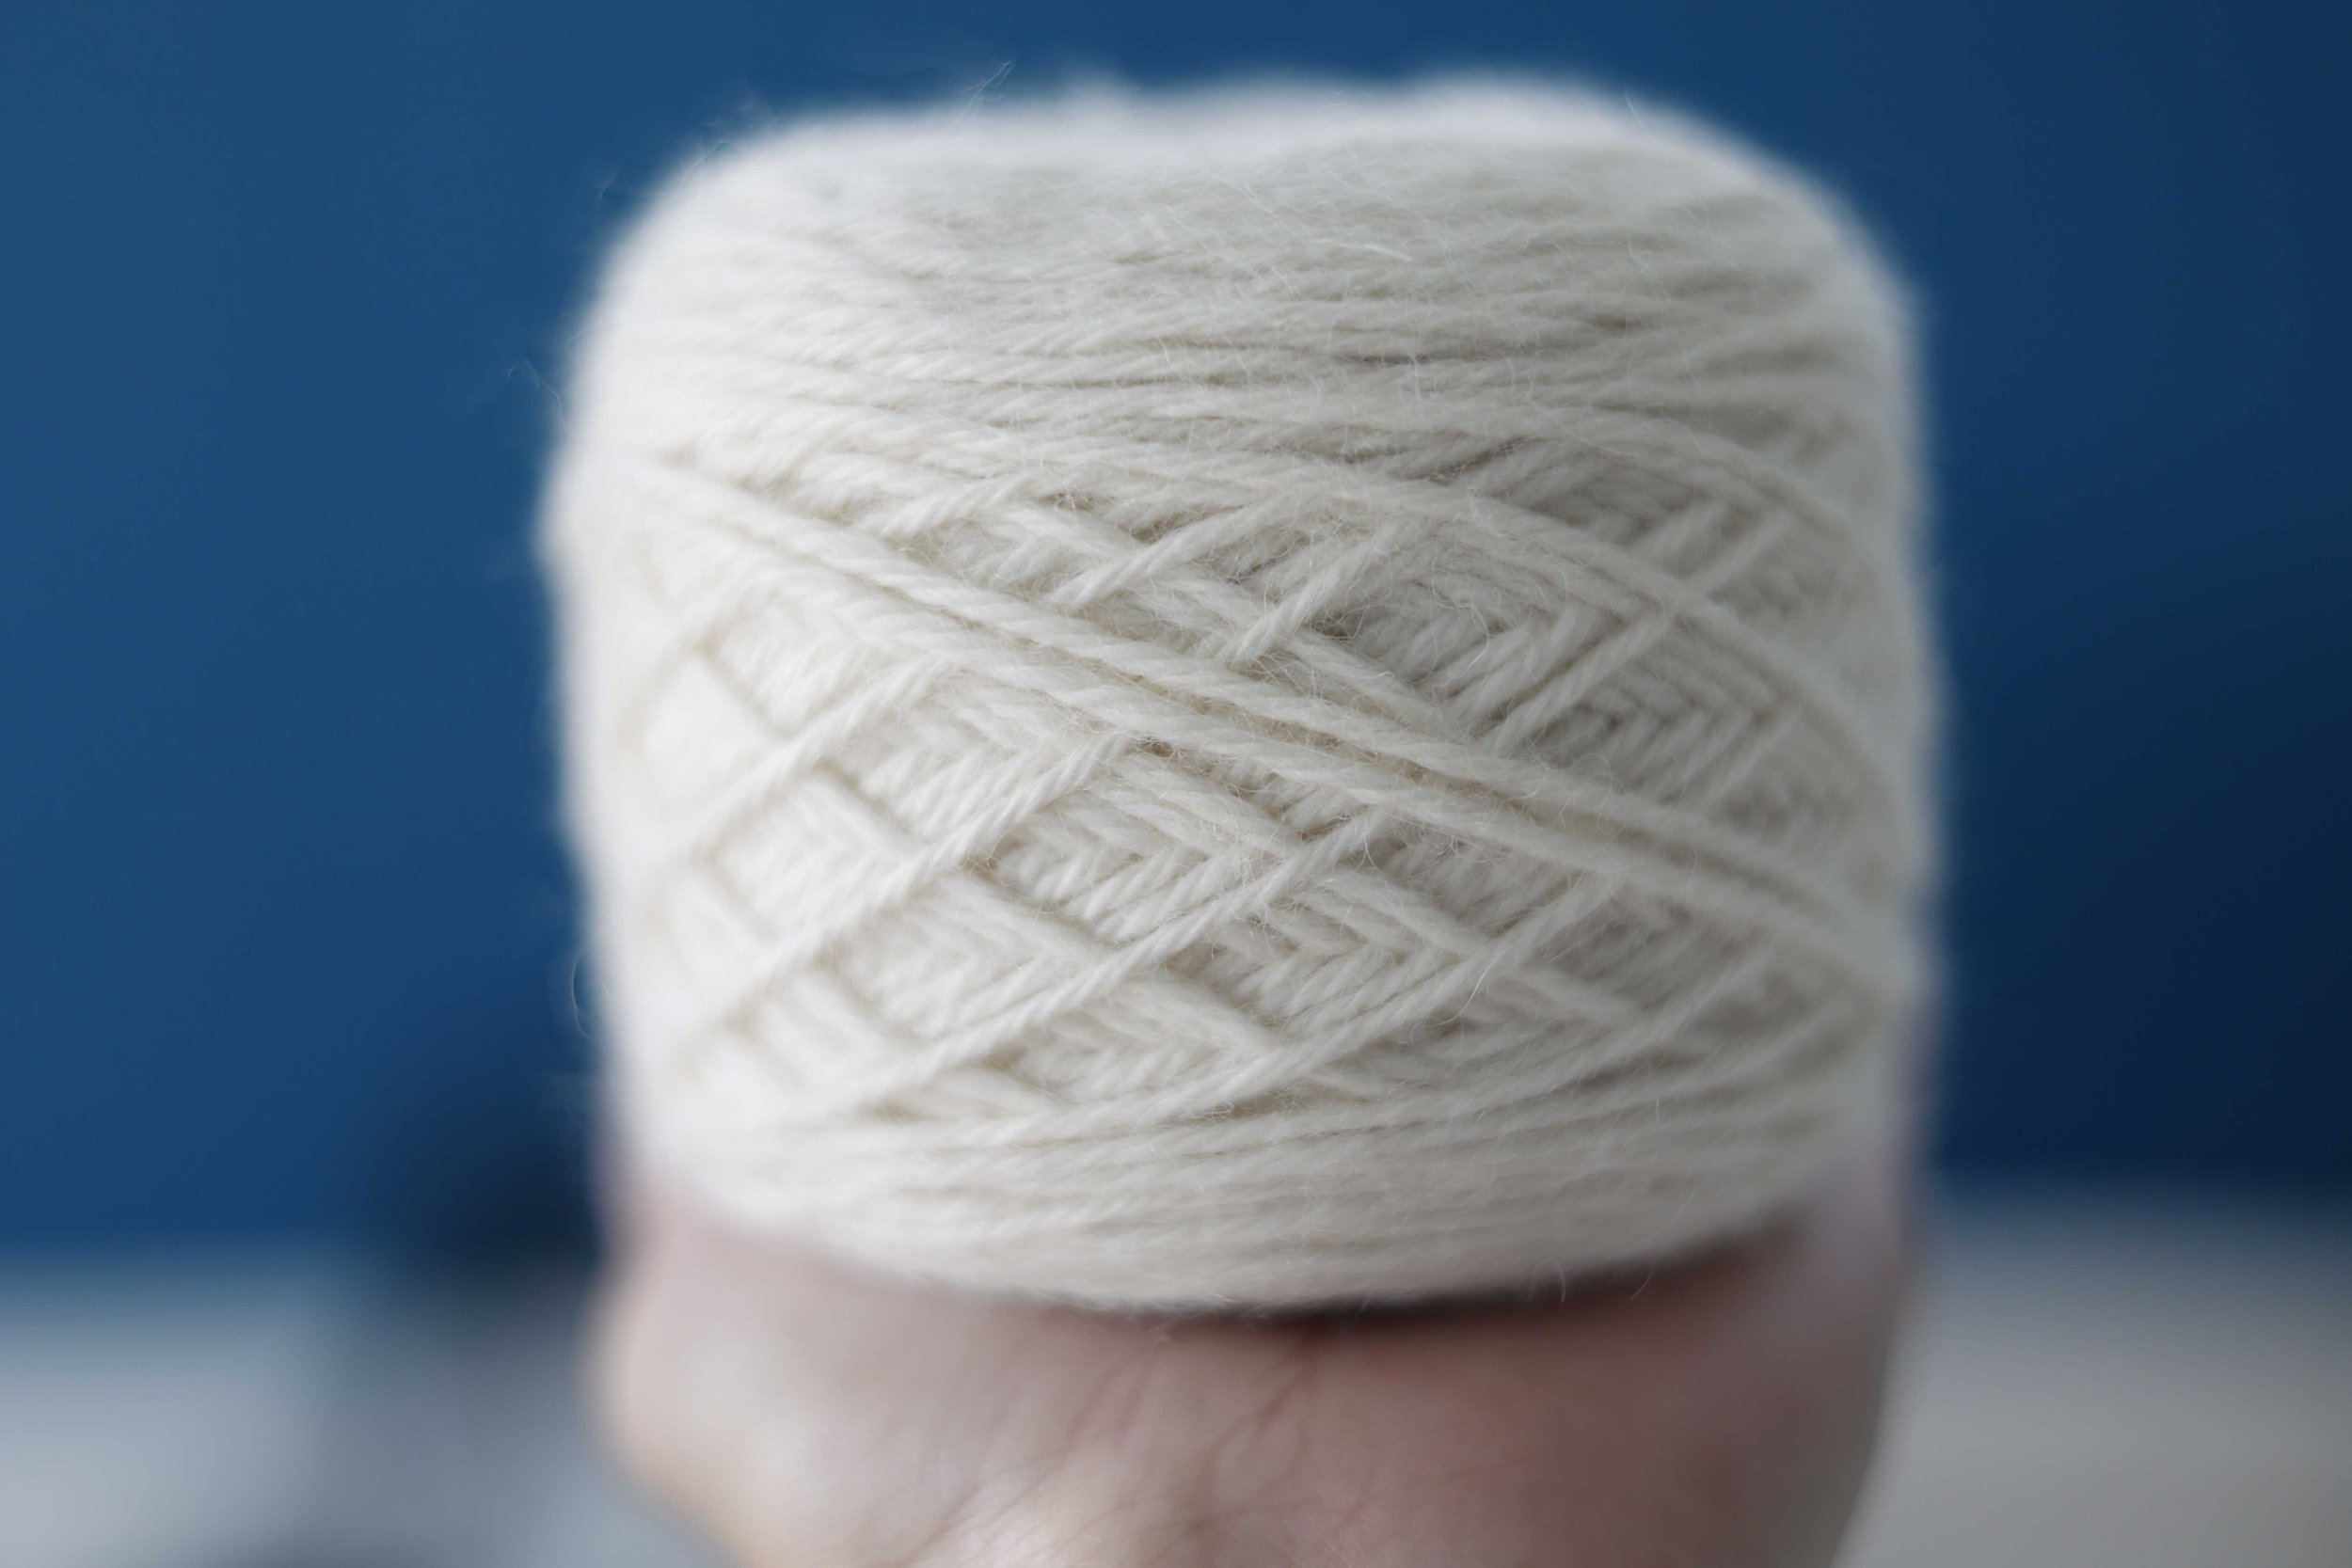 Knit Picks Andean Treasure: A Full Review — Kirsten Joel